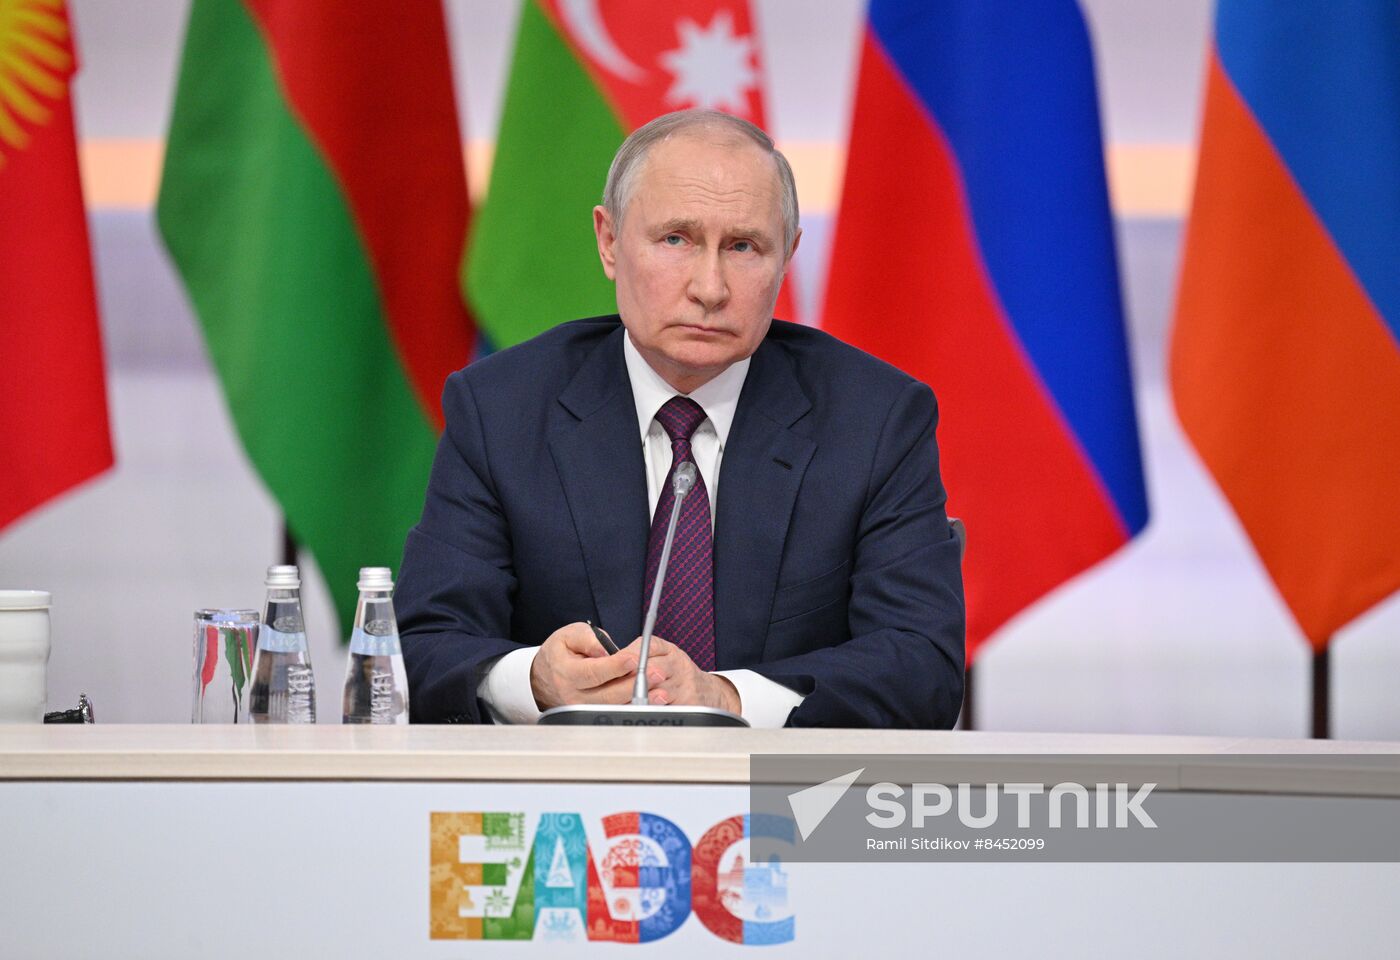 Russia Putin EAEU Summit